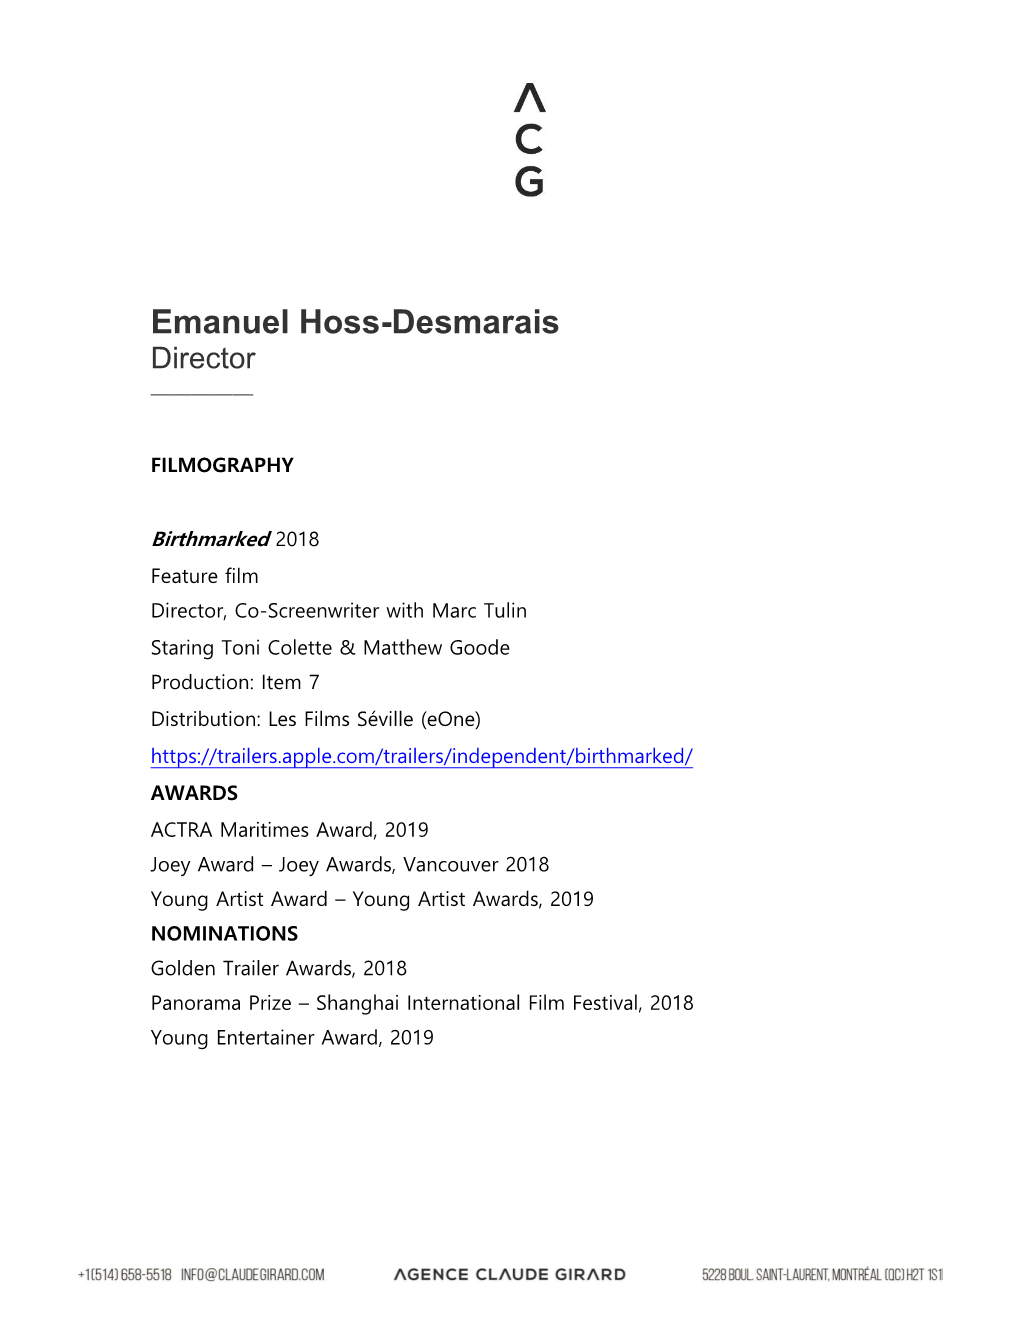 Emanuel Hoss-Desmarais Director —————